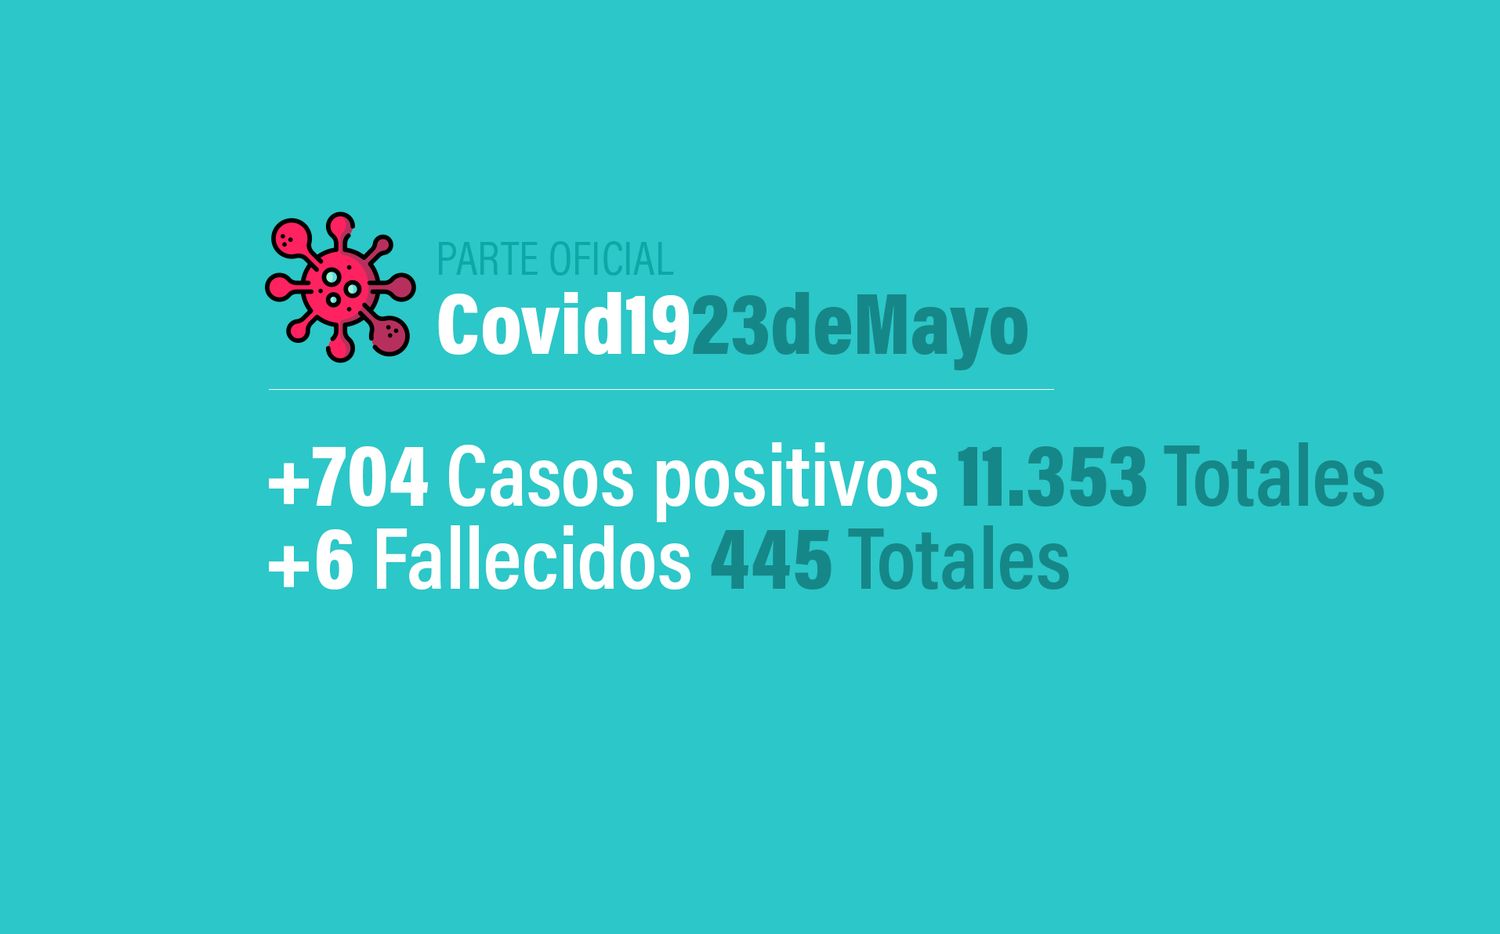 Coronavirus en Argentina: 704 nuevos casos, 11353 confirmados y 445 muertes, al 23 de mayo